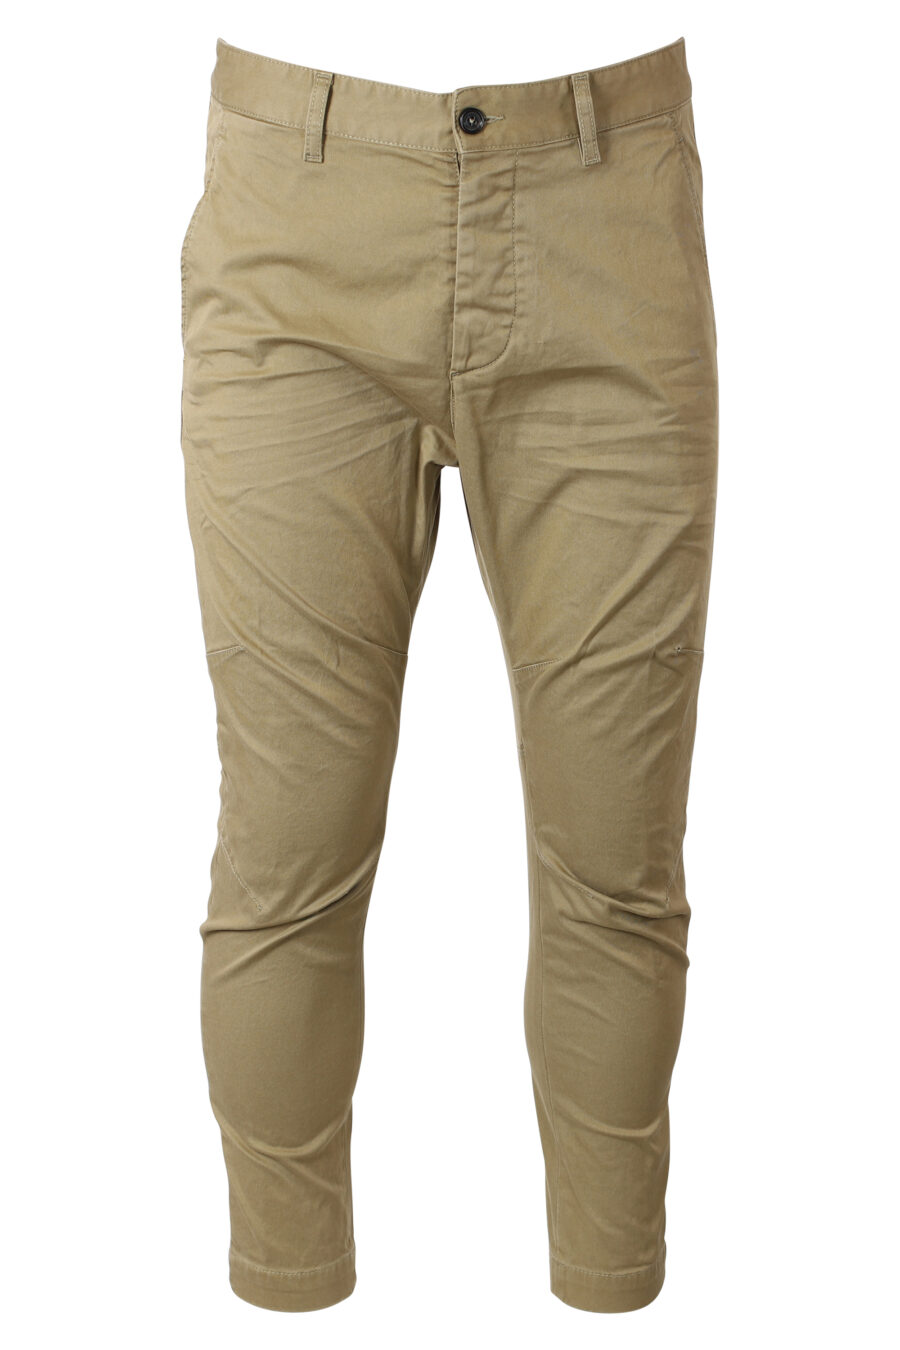 Pantalon beige "sexy chino" - IMG 9947